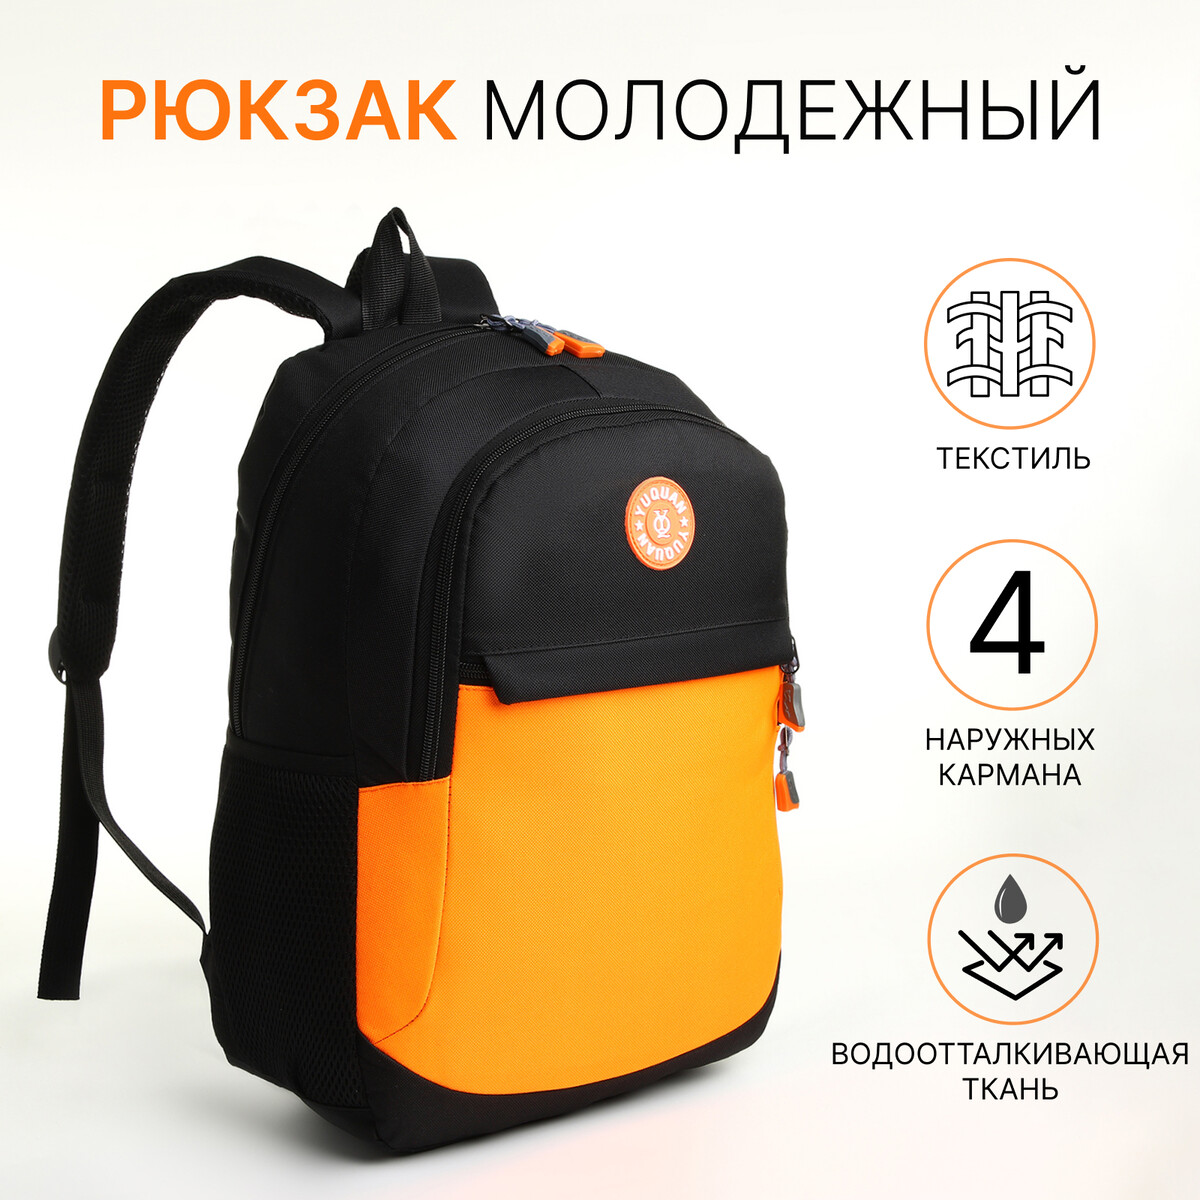 Рюкзак школьный, 2 отдела молнии, 3 кармана, цвет черный/оранжевый рюкзак школьный из текстиля на молнии 4 кармана кошелек серый оранжевый